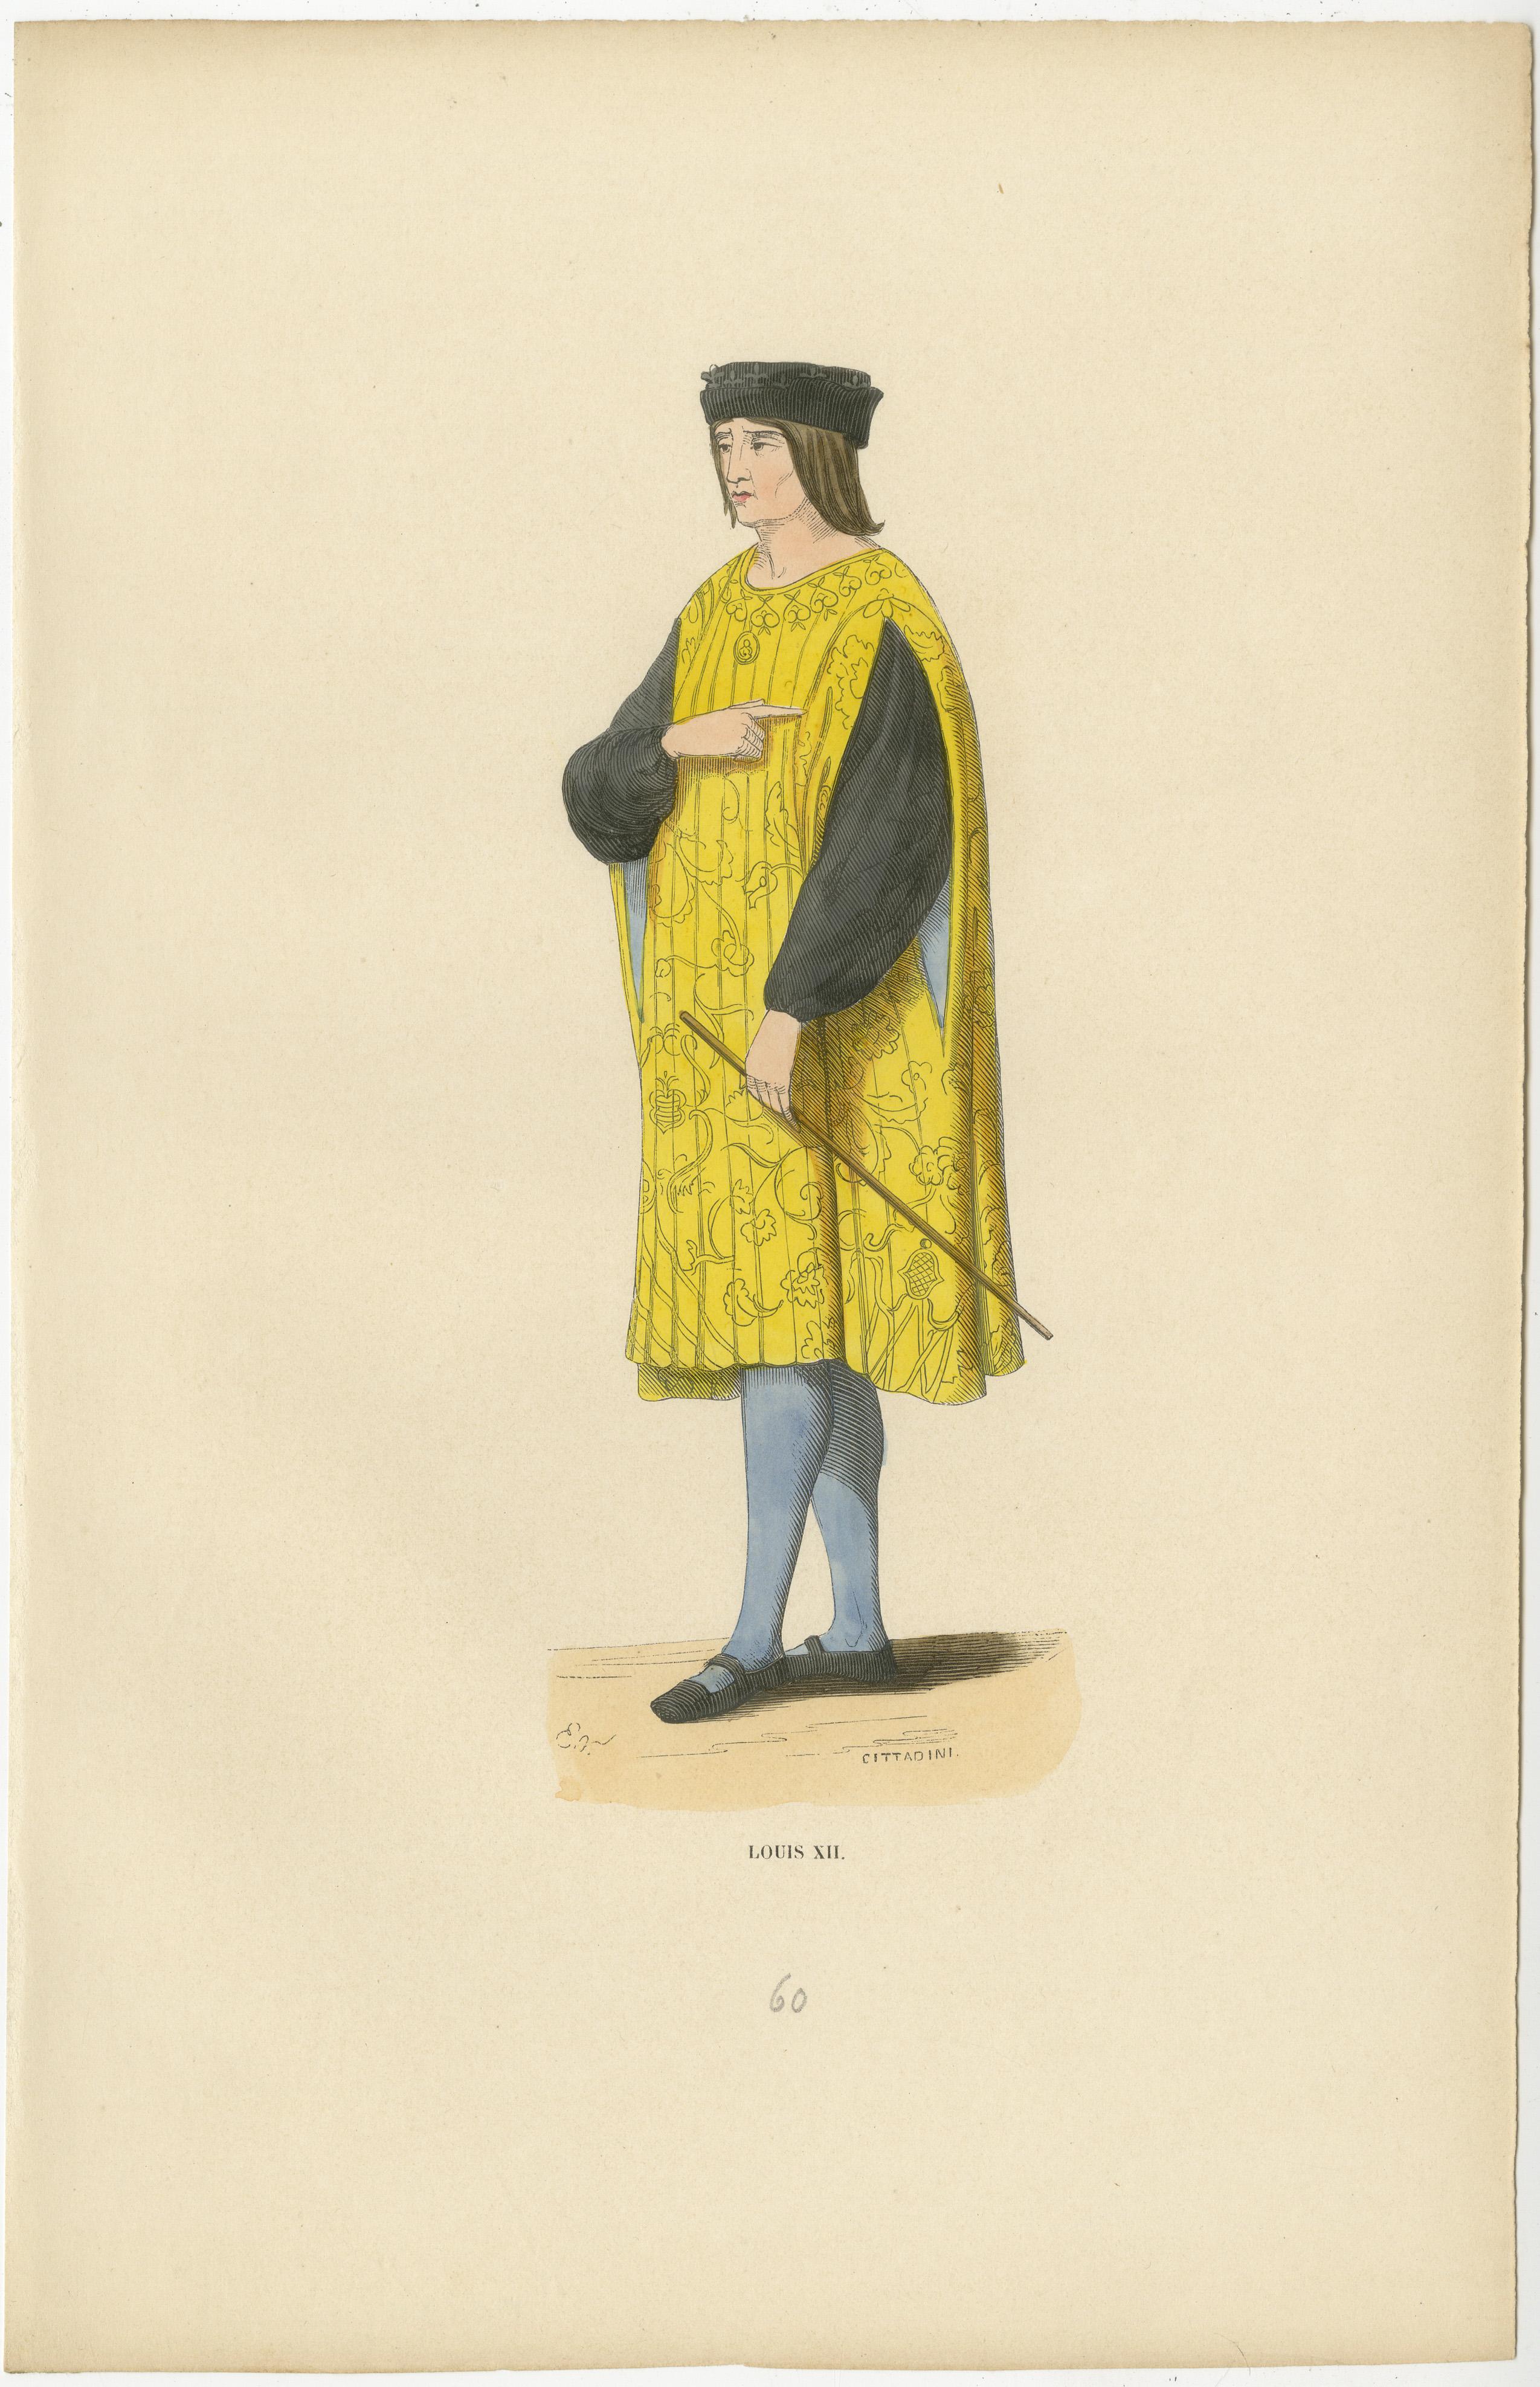 Cette estampe présente un portrait digne de Louis XII, roi de France, connu pour son règne prudent et juste. De profil, le roi est représenté dans une tenue royale à la fois somptueuse et emblématique de son statut.

Il est vêtu d'une longue robe